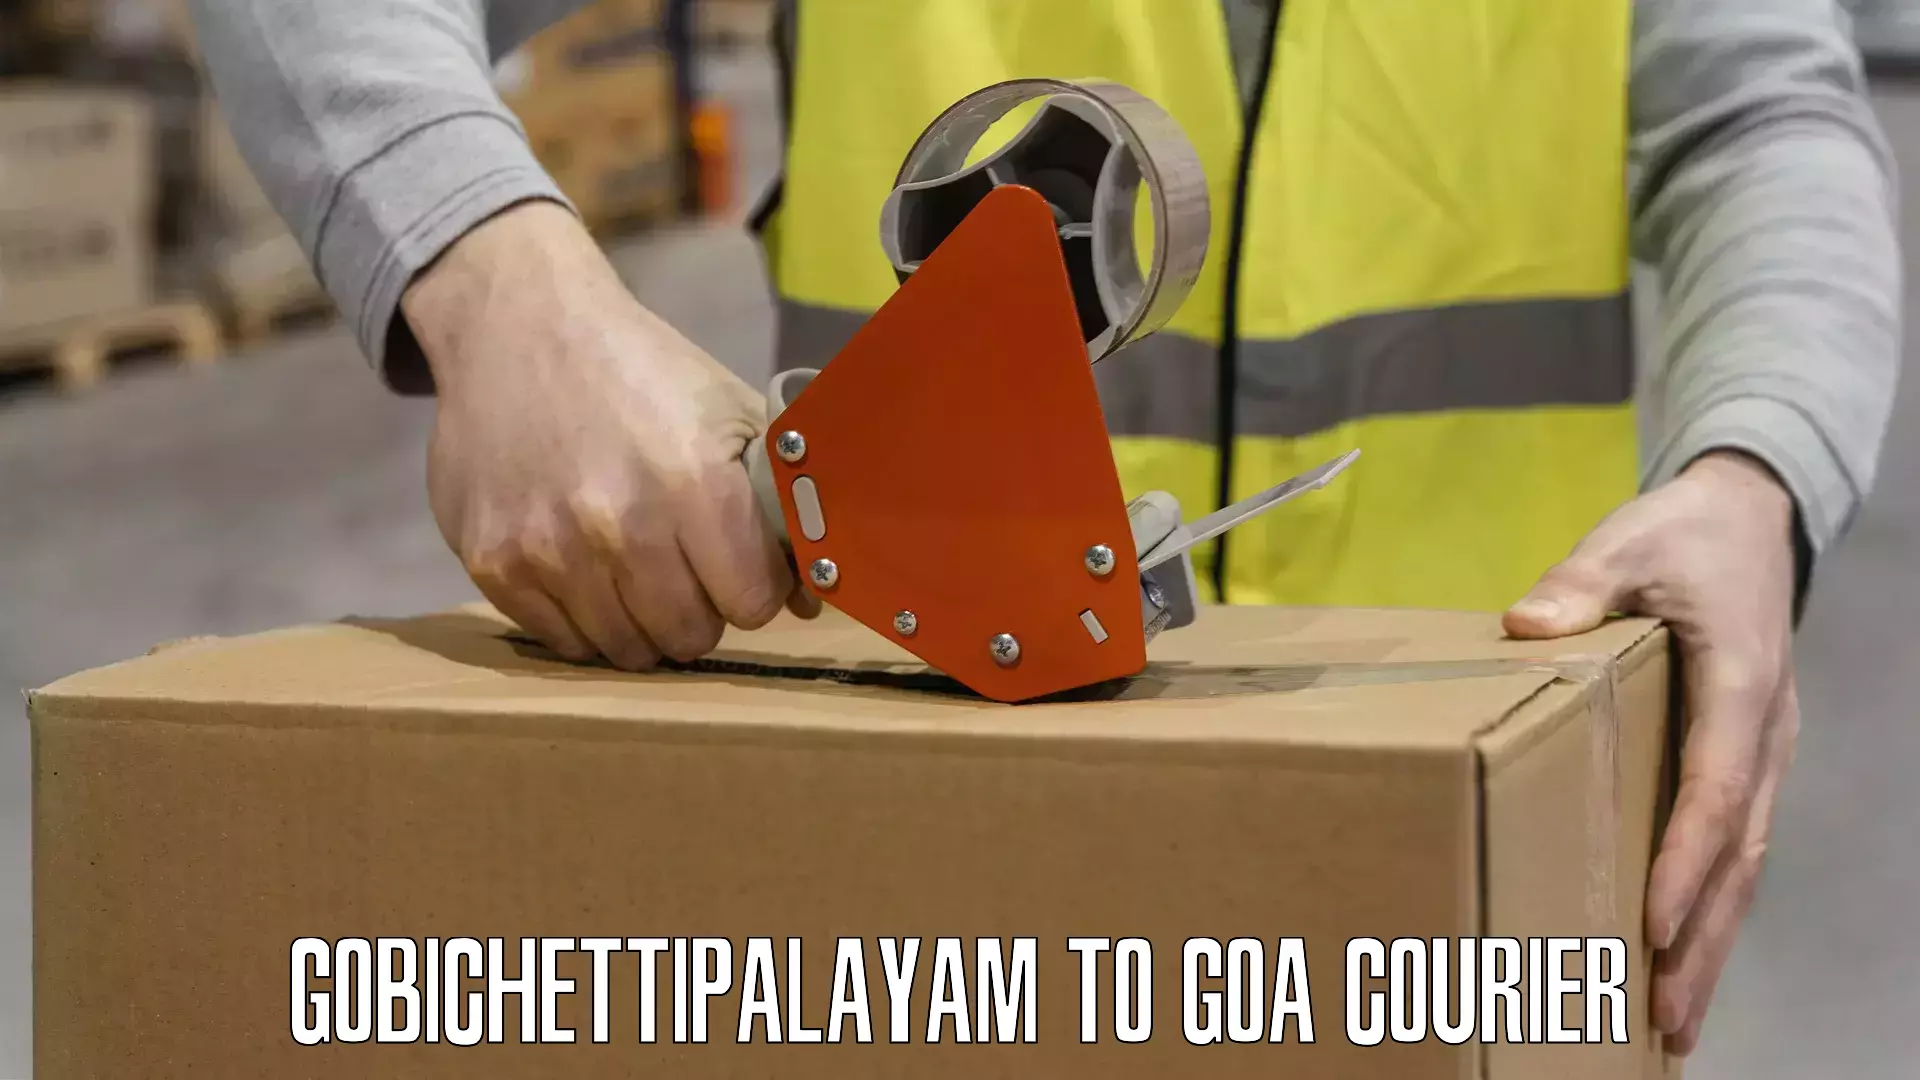 Business shipping needs Gobichettipalayam to Panaji